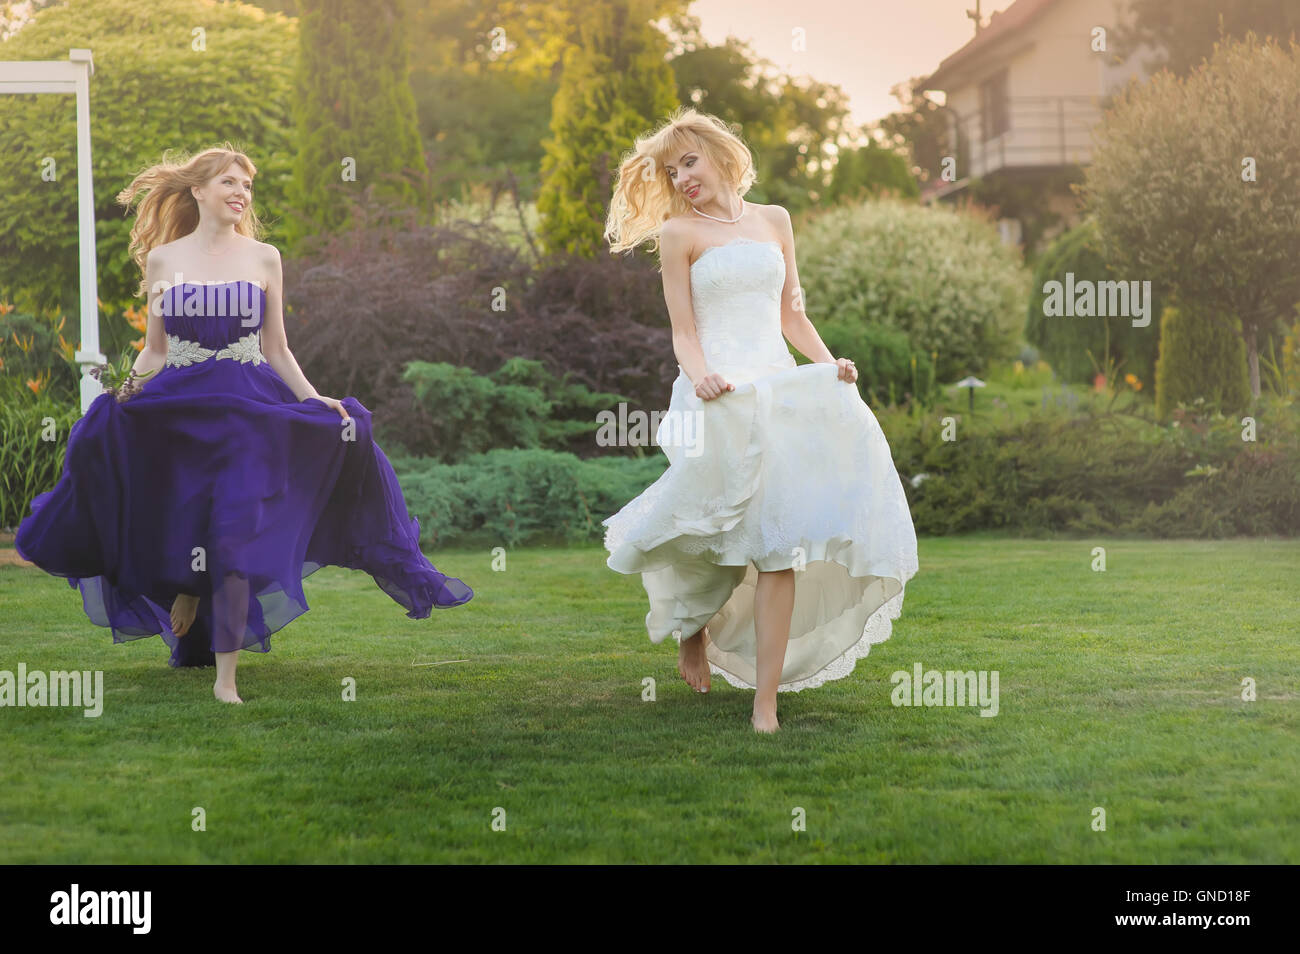 Braut und Brautjungfer außerhalb. Zwei schöne Mädchen auf Rasen laufen. Braut im Hochzeitskleid. Brautjungfer in einem lila Abendkleid. Stockfoto